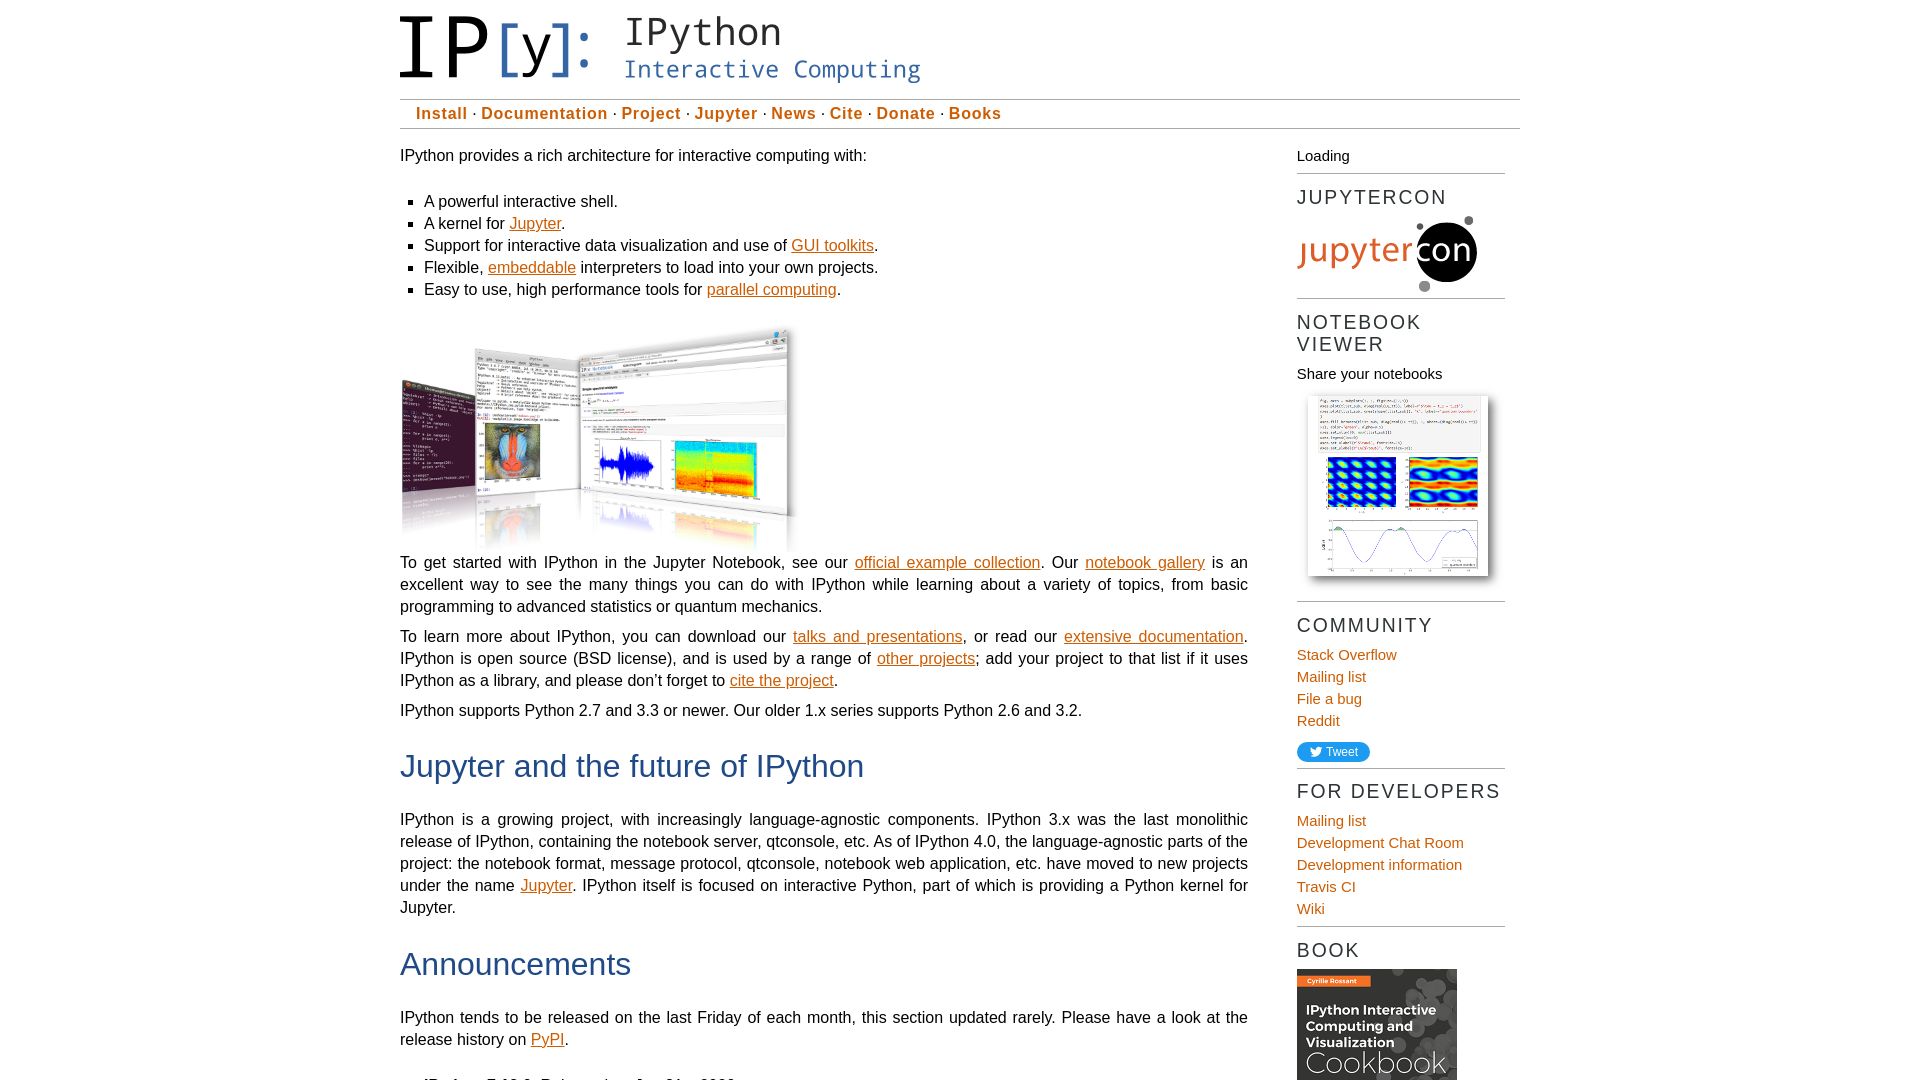 Status do site ipython.org está   ONLINE